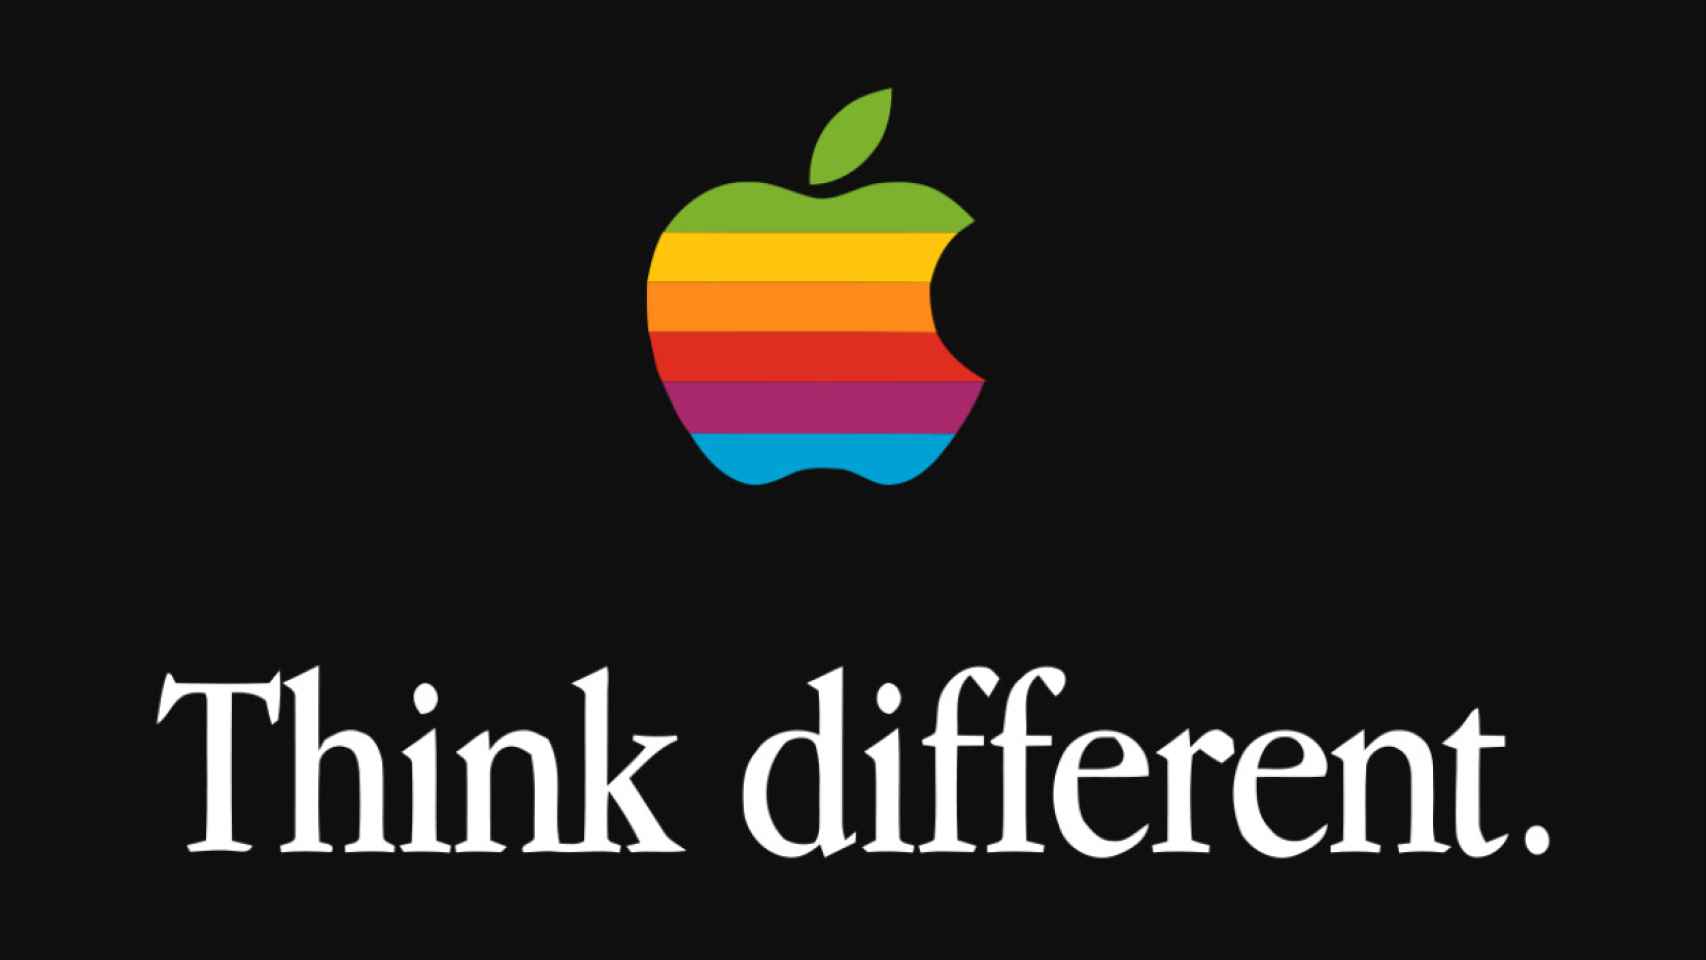 La marca de la manzana iridiscente y con un mordisco nunca ha querido acudir al Mobile World Congress / Apple